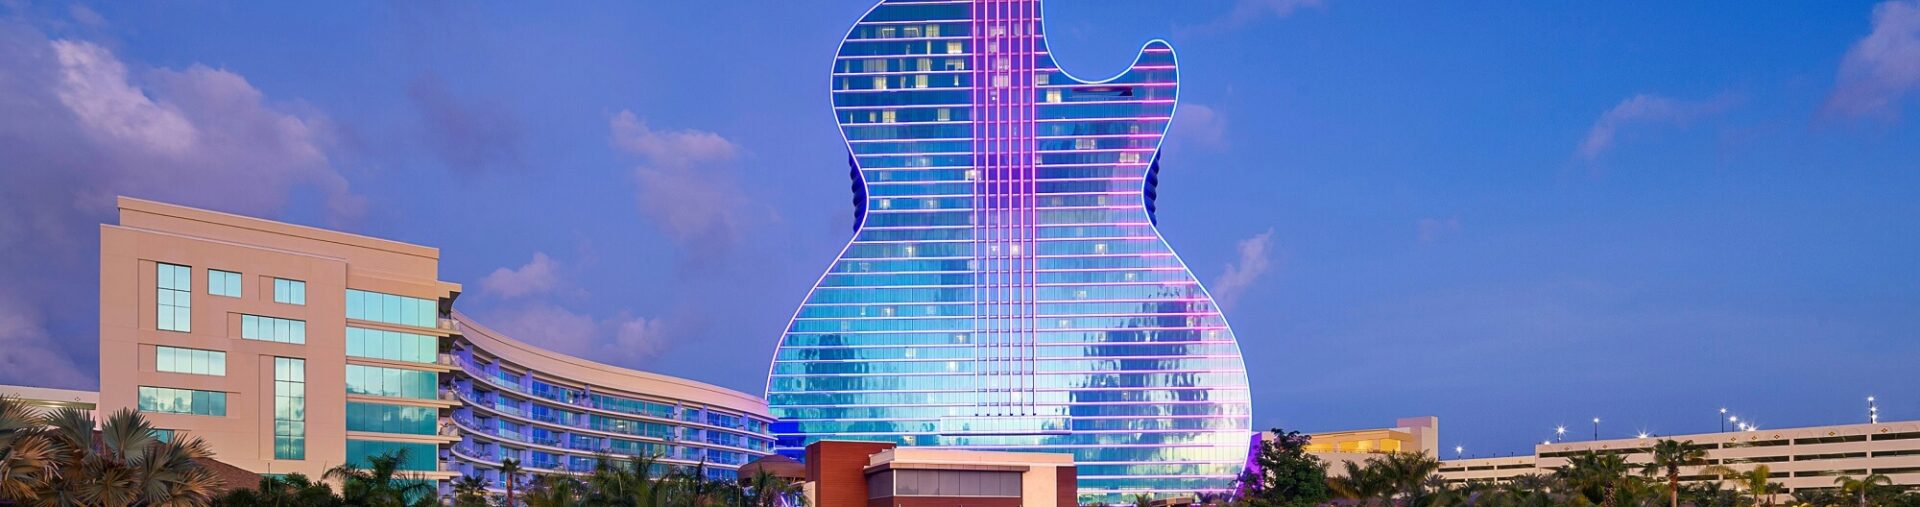 seminole hard rock casino atlantic city